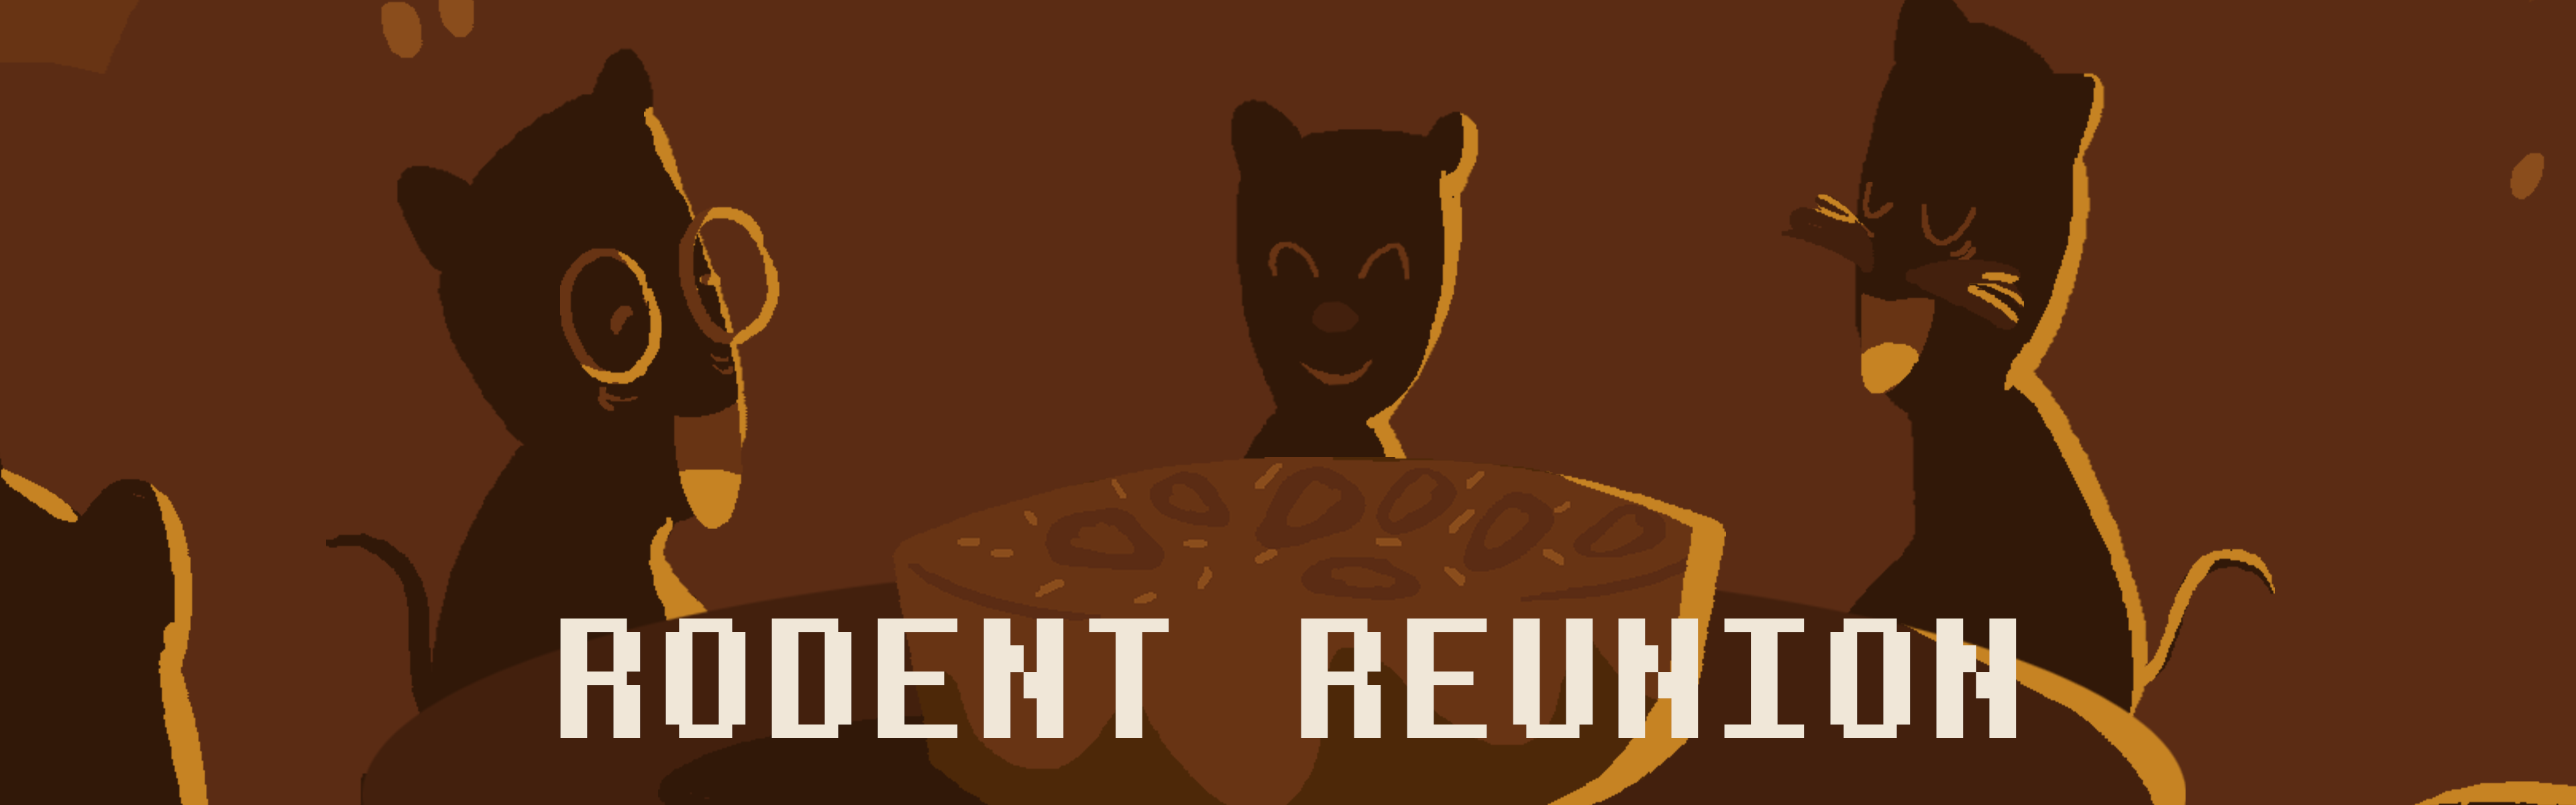 Rodent Reunion